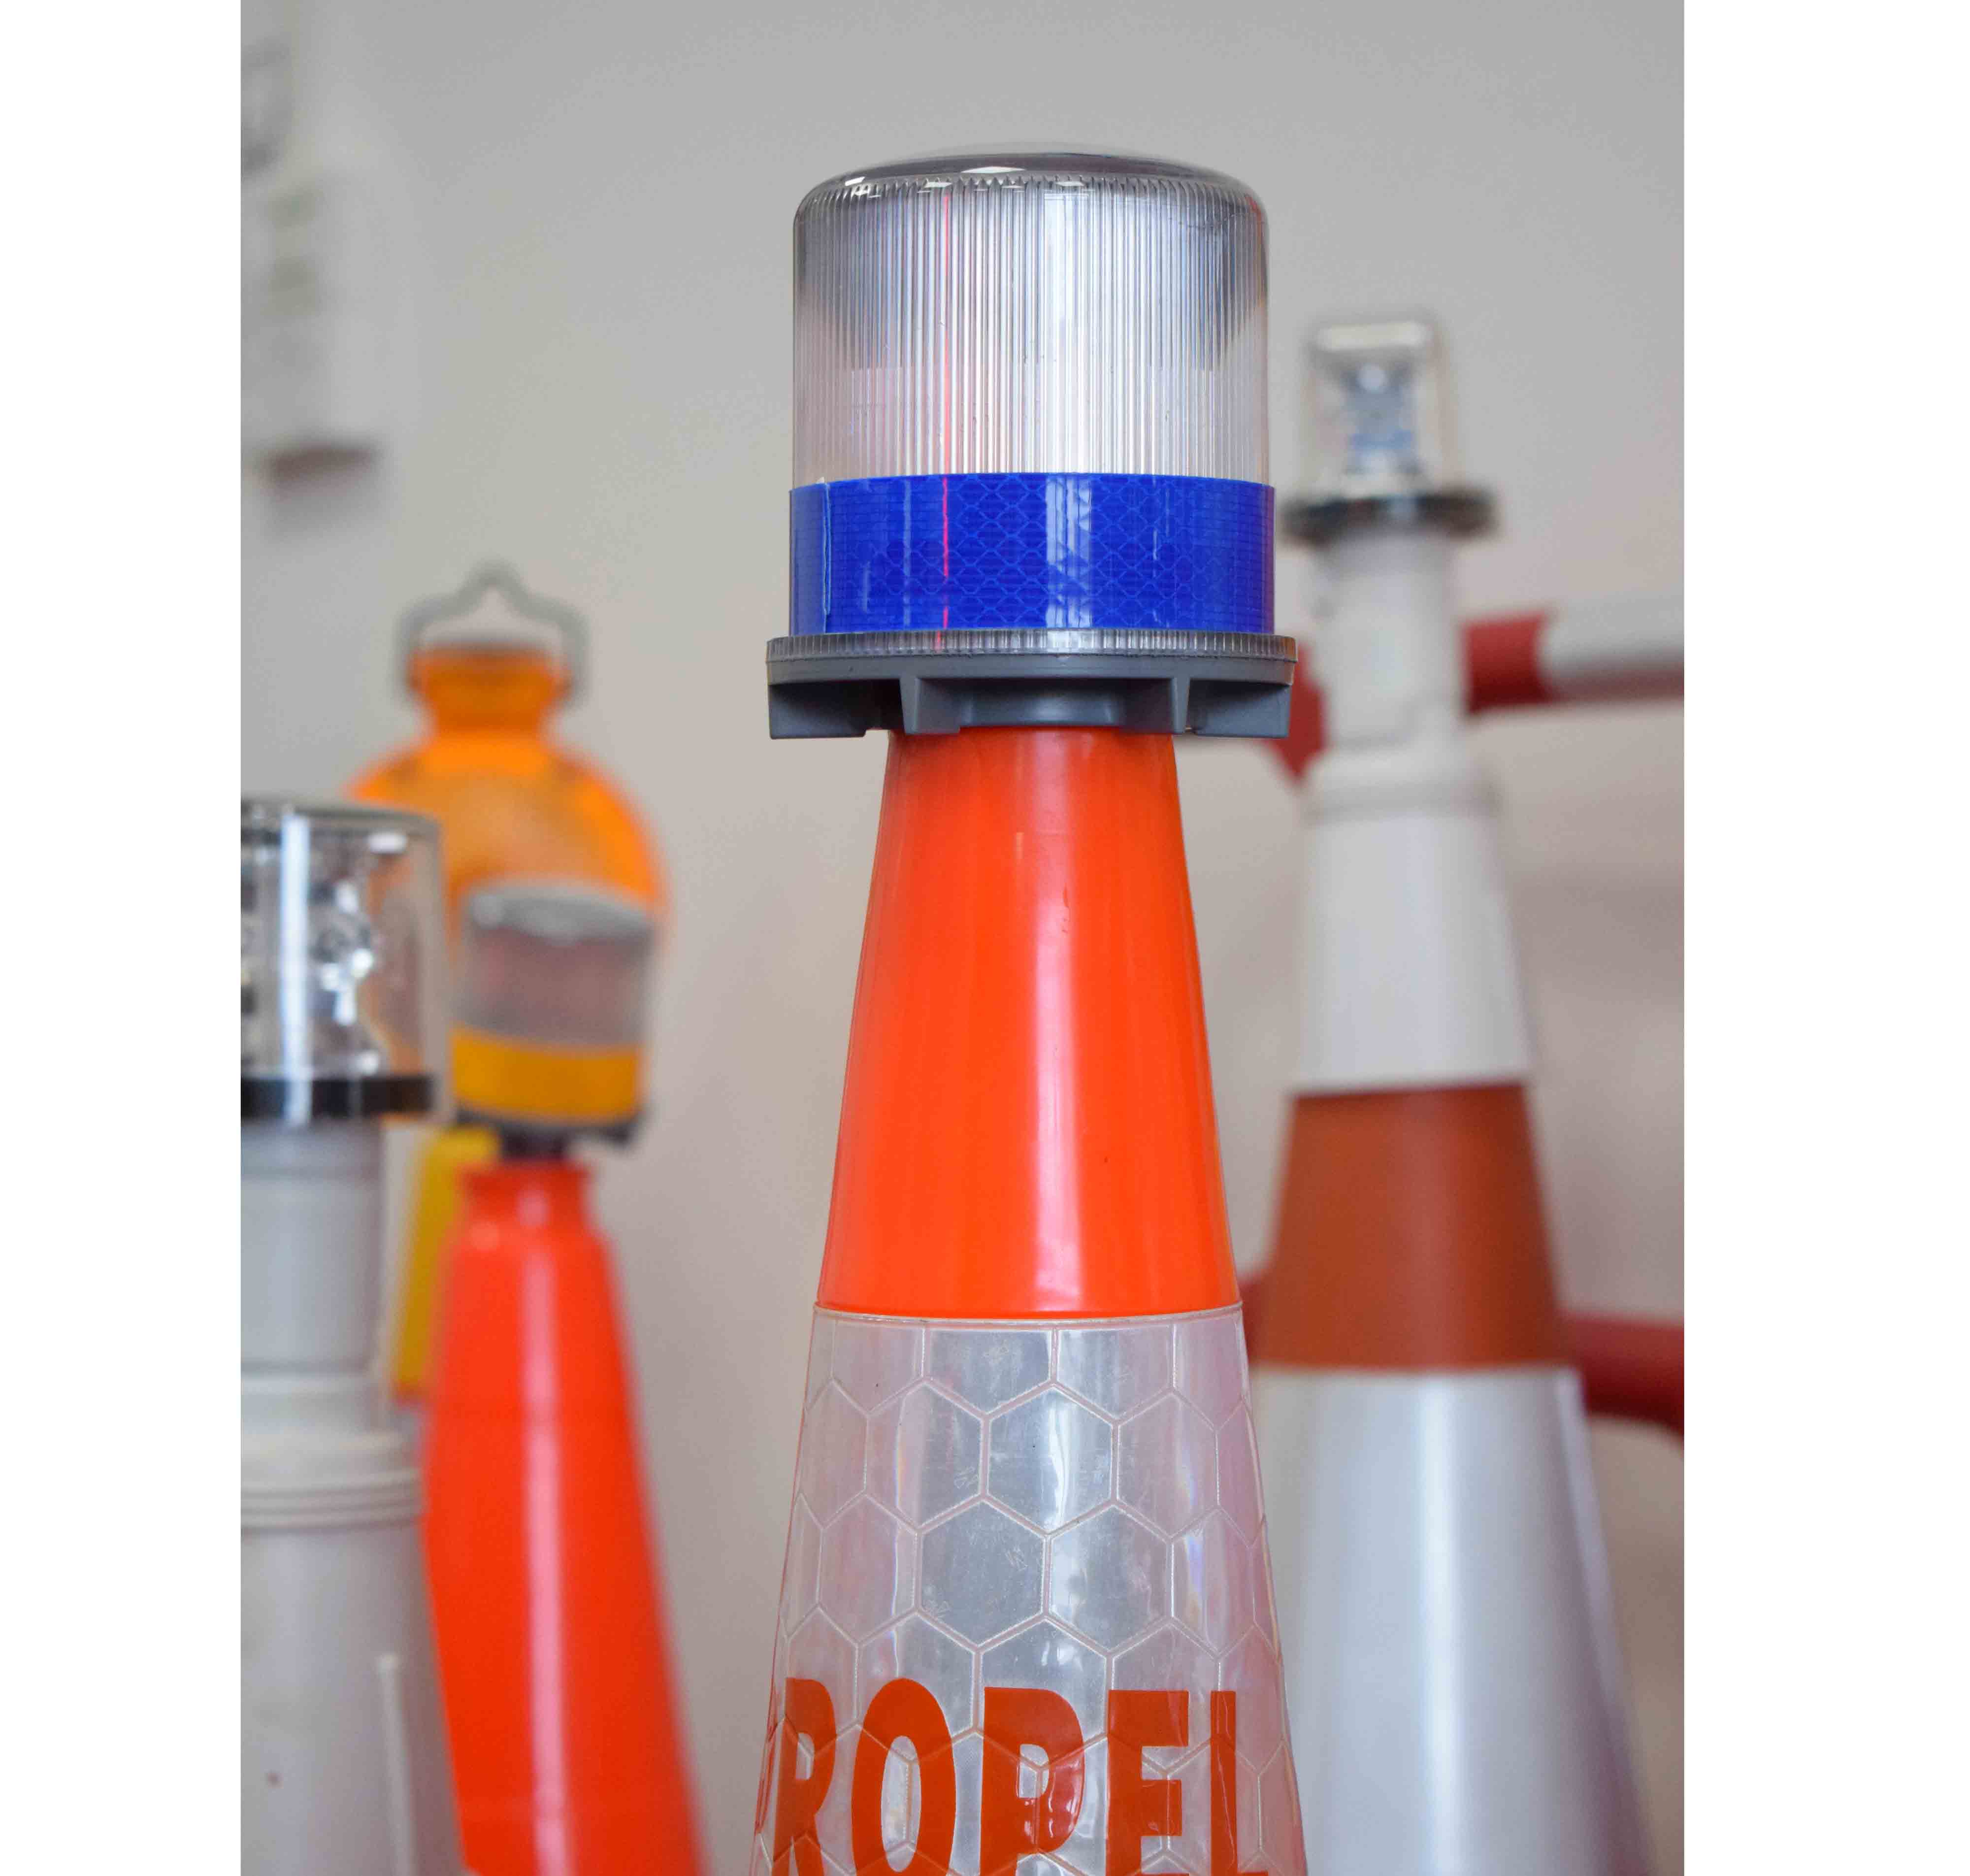 DK LED traffic safety blinker cones beacon solar powered warning light